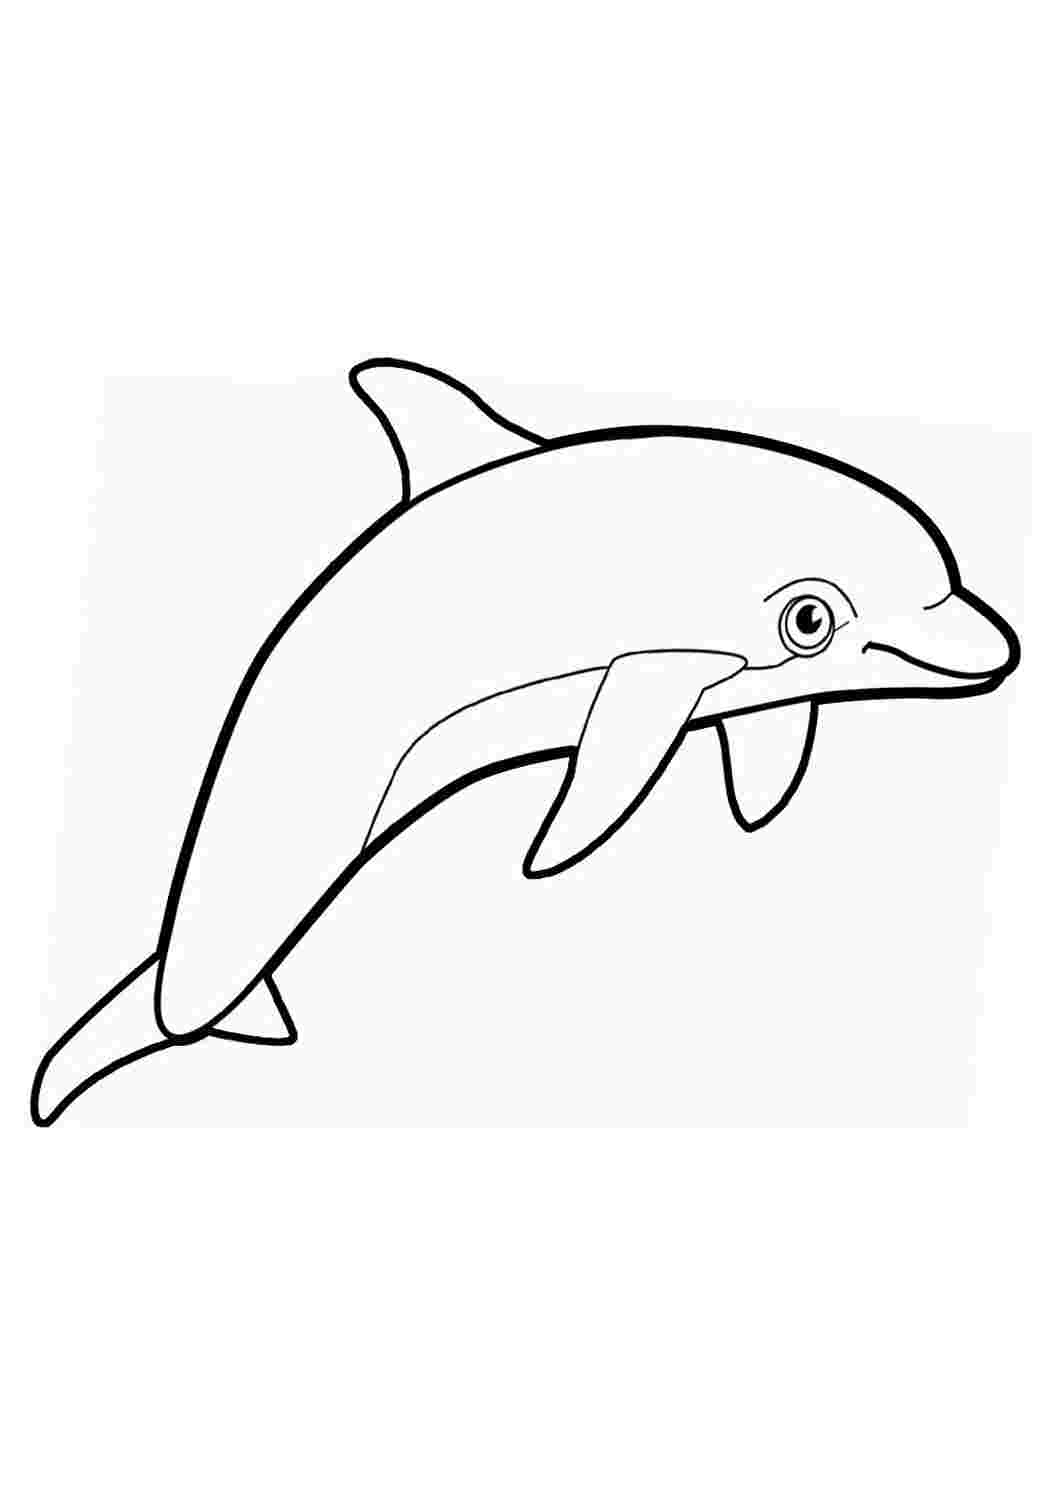 Контур дельфина для раскрашивания